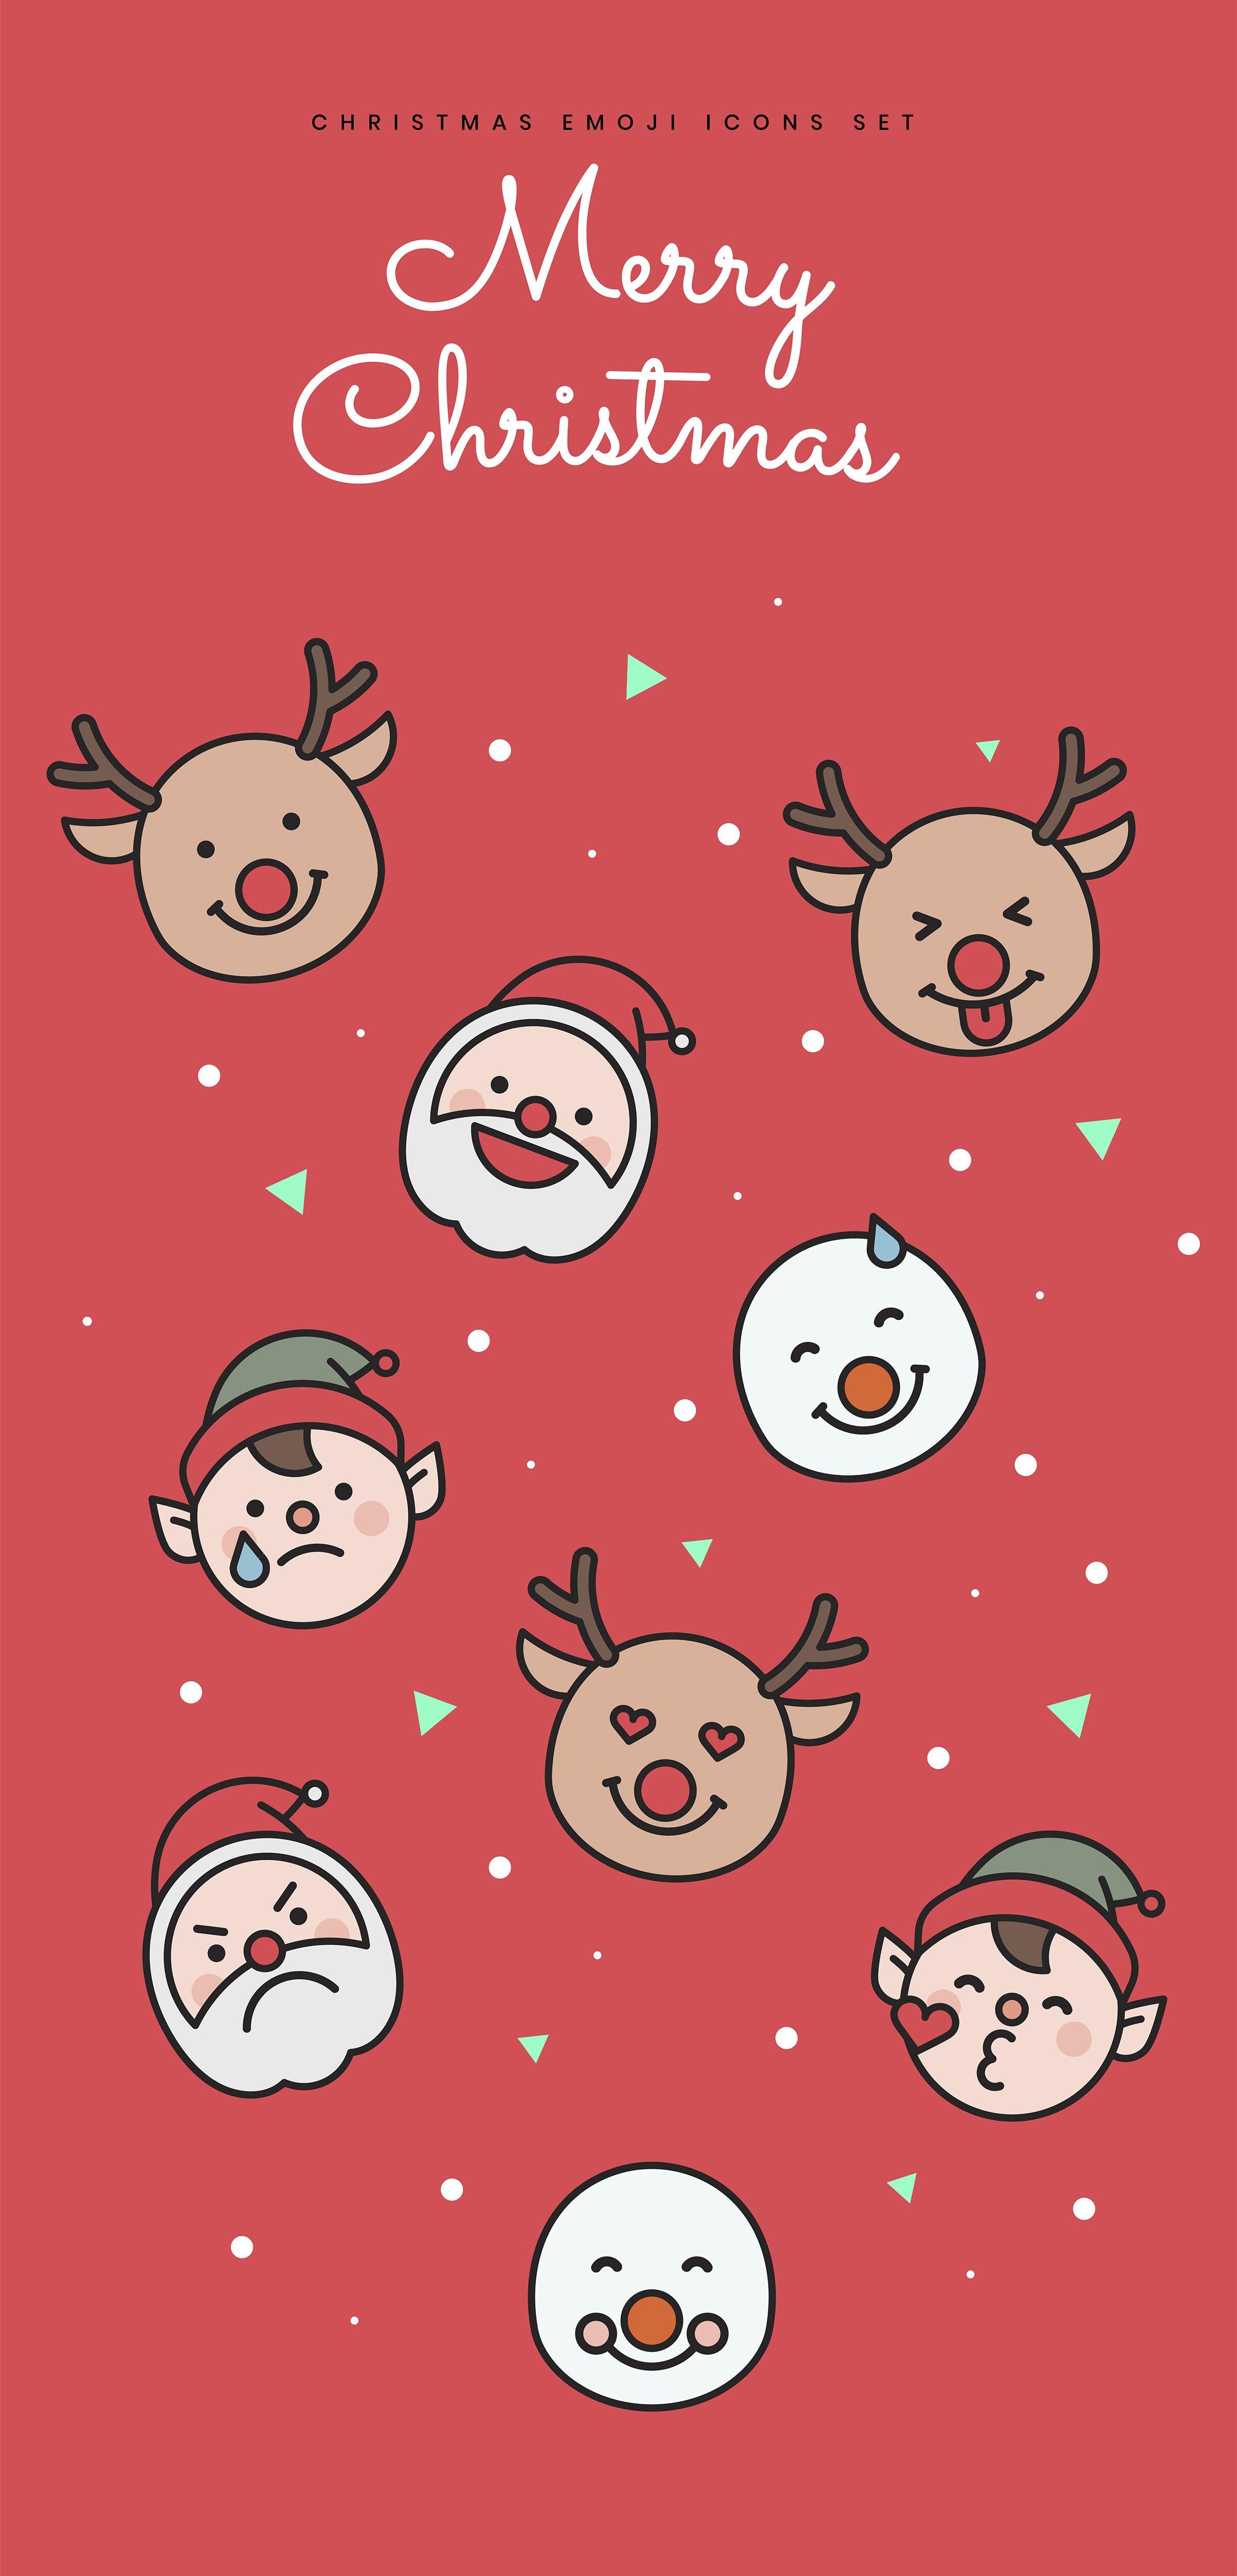 Christmas Emoji Icons Set Icon set Christmas wallpaper Emoji